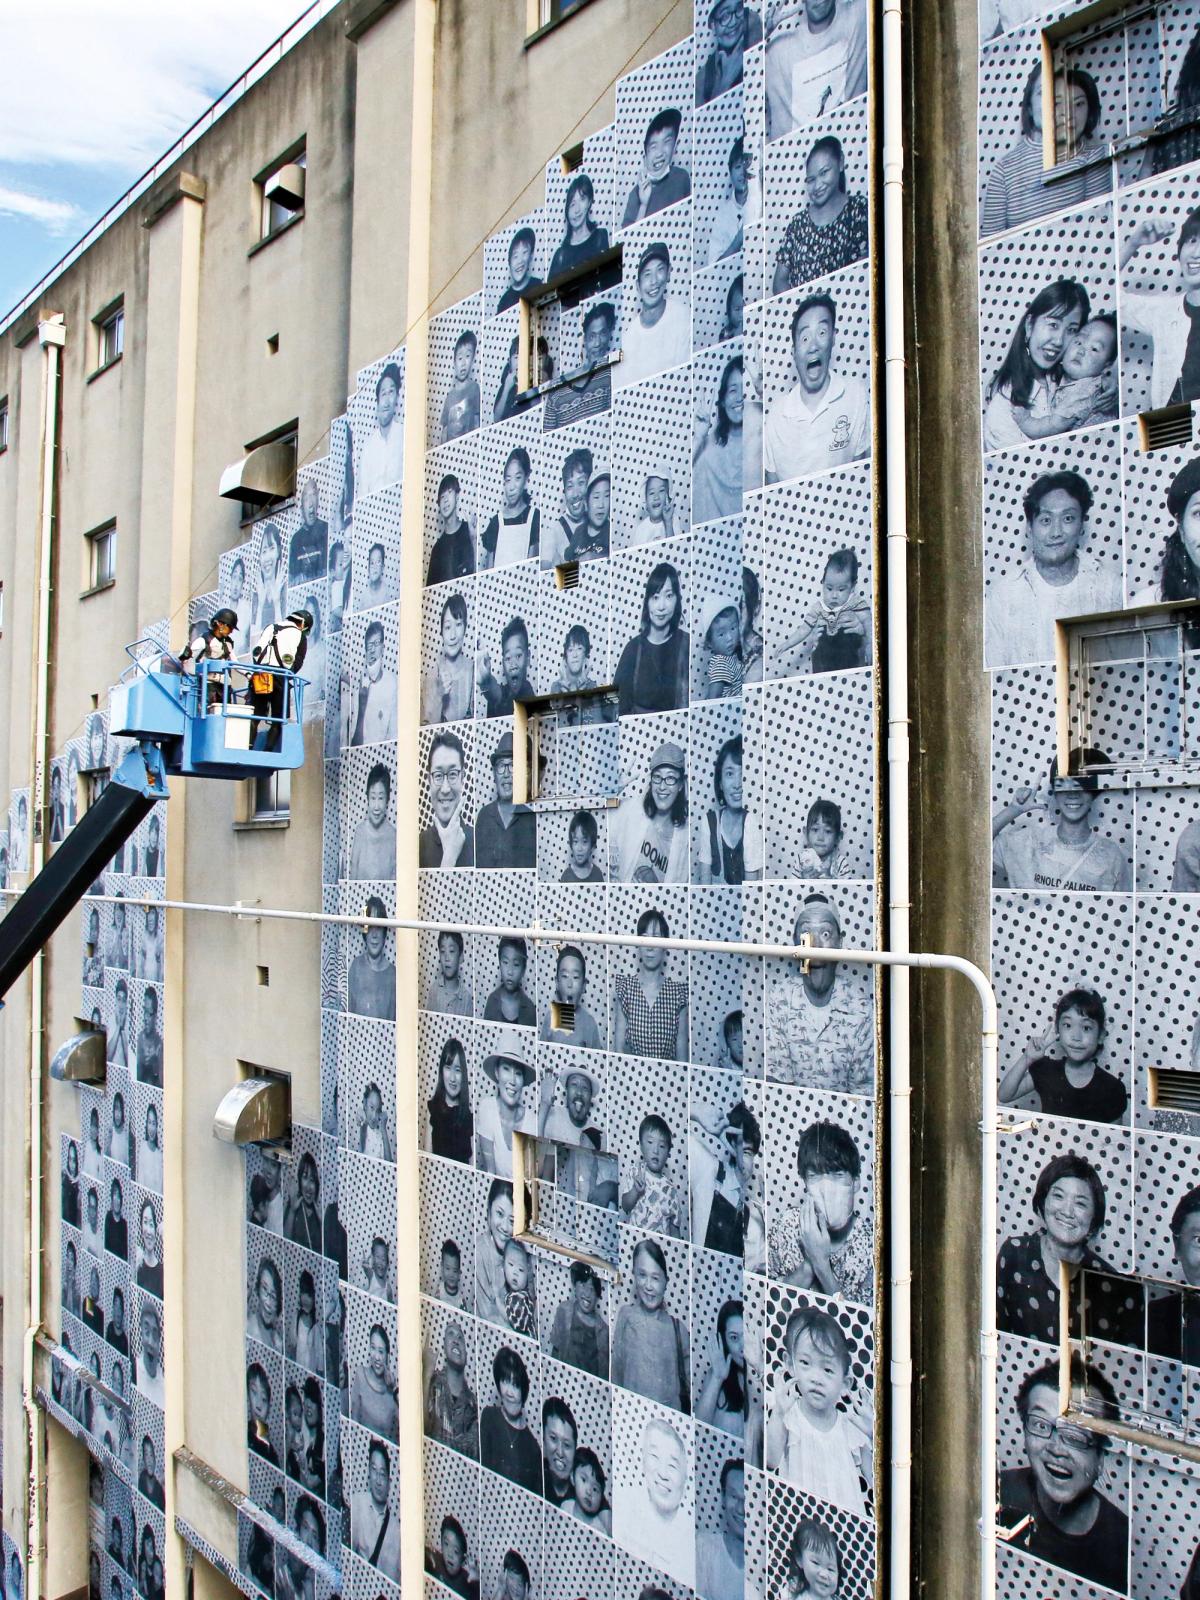 An Inside Out project in Kobe, Japan, 2022 Photo: Yoshida-San;
www.insideoutproject.net